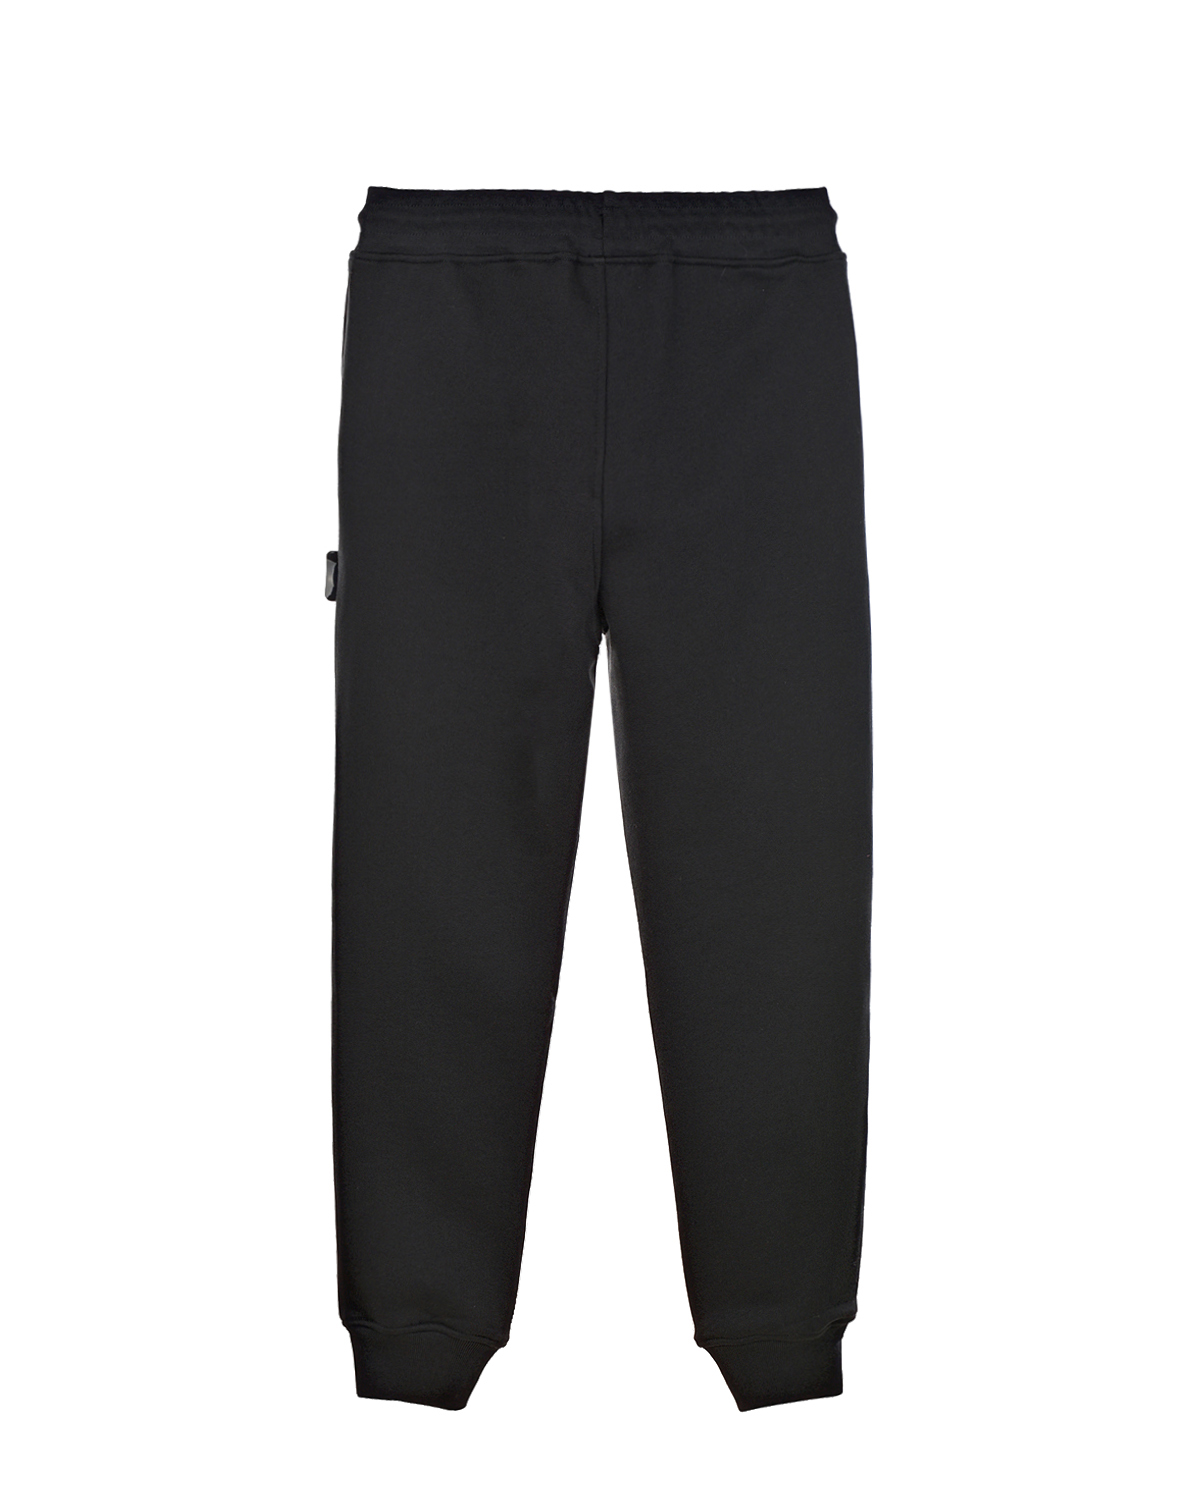 Спортивные брюки из хлопка GCDS детские, размер 140, цвет черный - фото 2